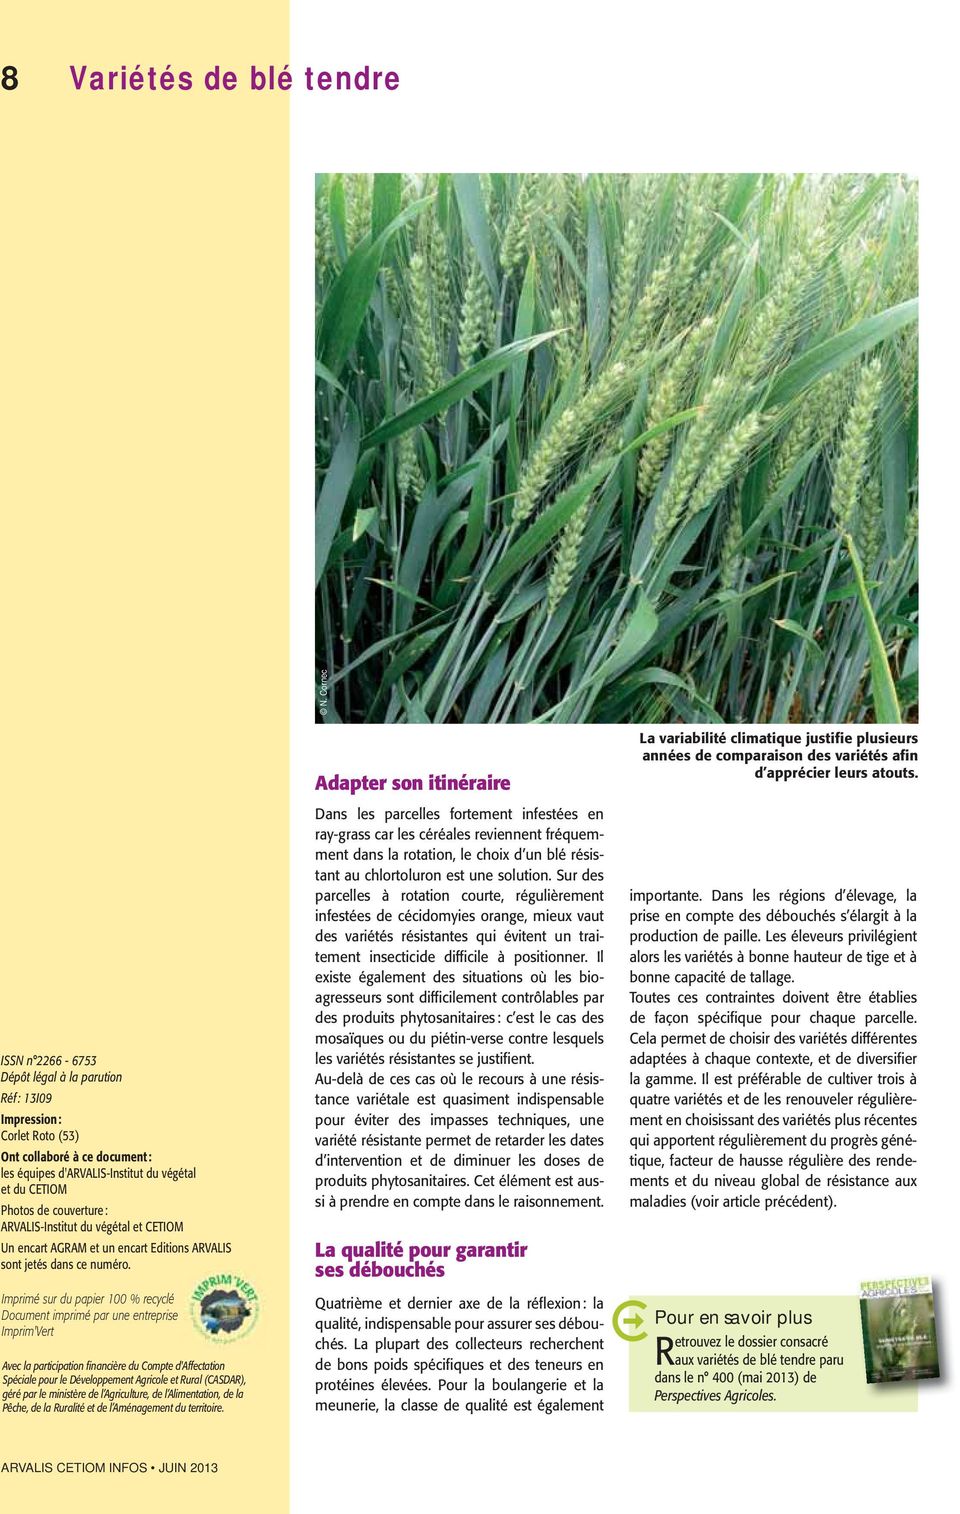 ARVALIS-Institut du végétal et CETIOM Un encart AGRAM et un encart Editions ARVALIS sont jetés dans ce numéro.